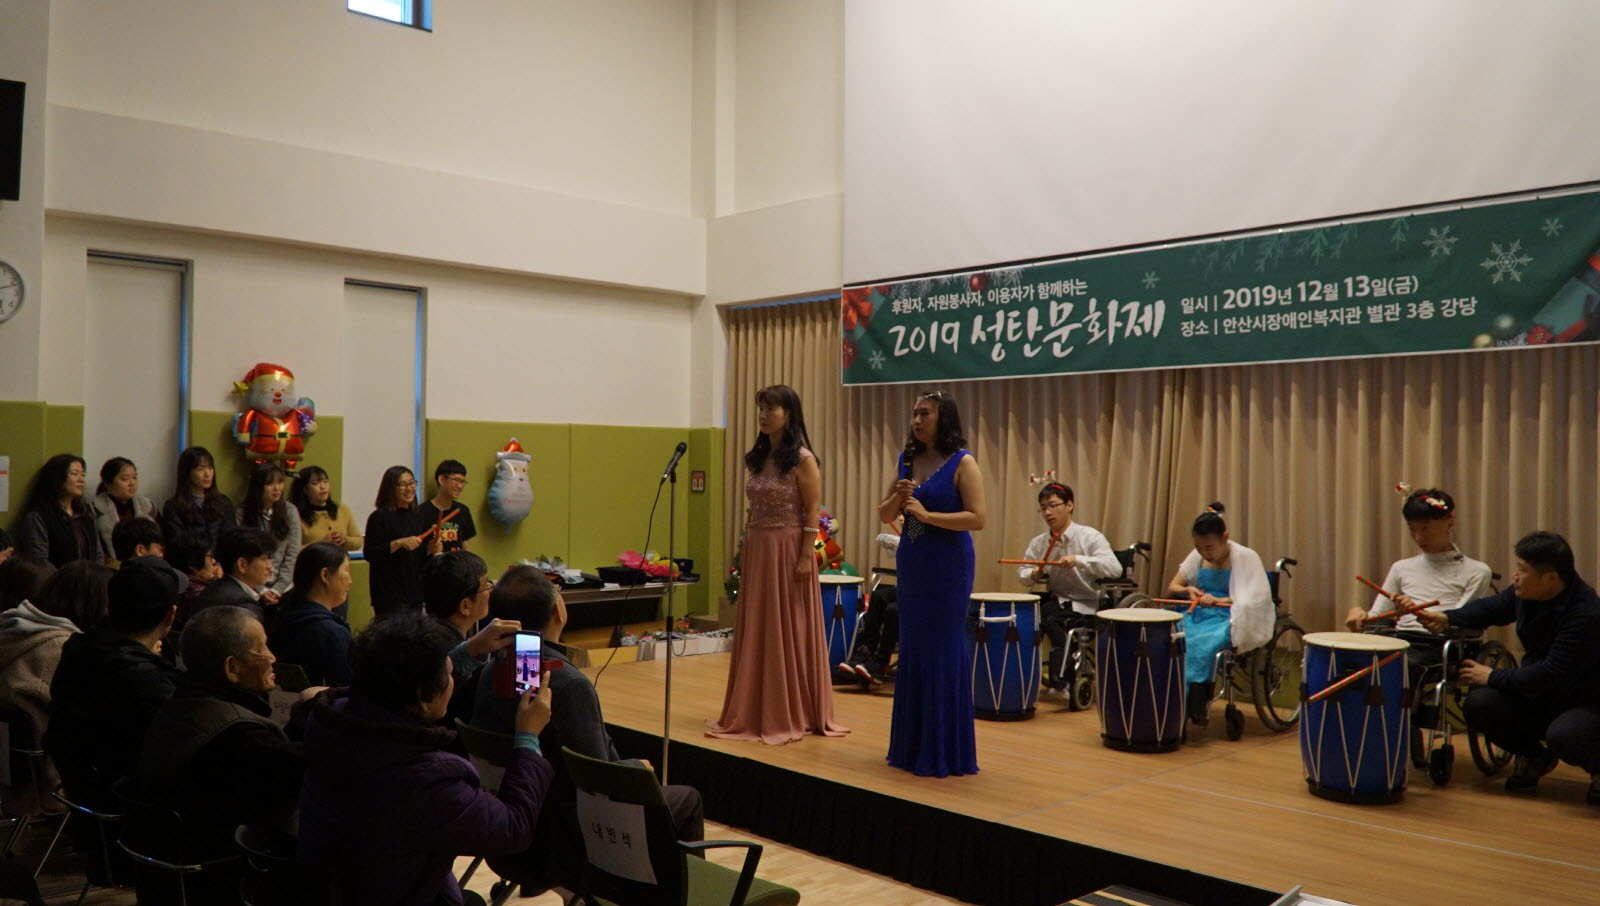 주간보호시설 대체인력, 자원봉사자, 이용자가 함께하는 노래와 난타 공연을 하고 있는 모습